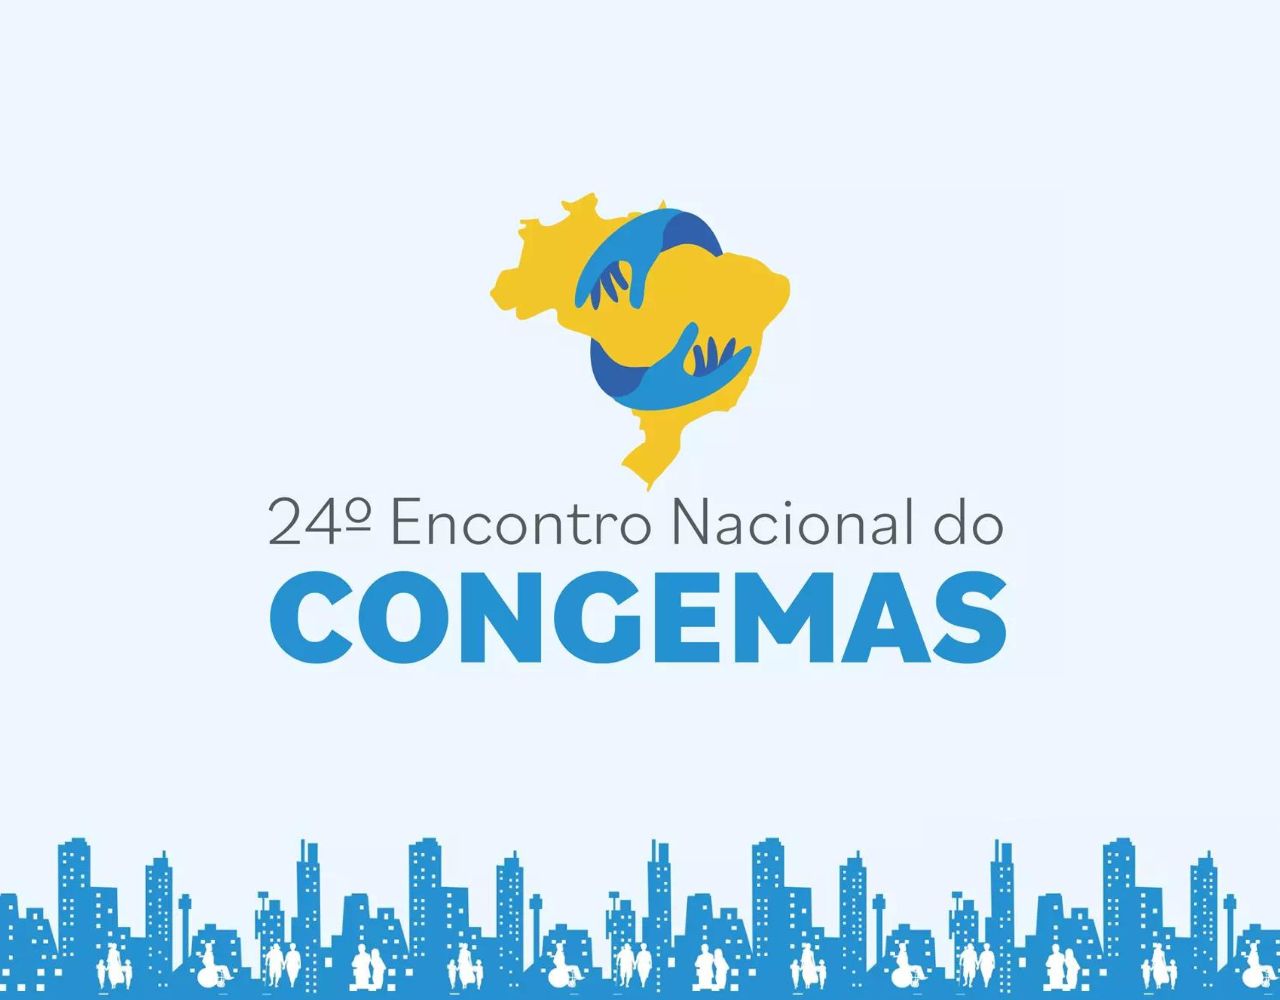 O evento contará com representantes de todos os estados do Brasil